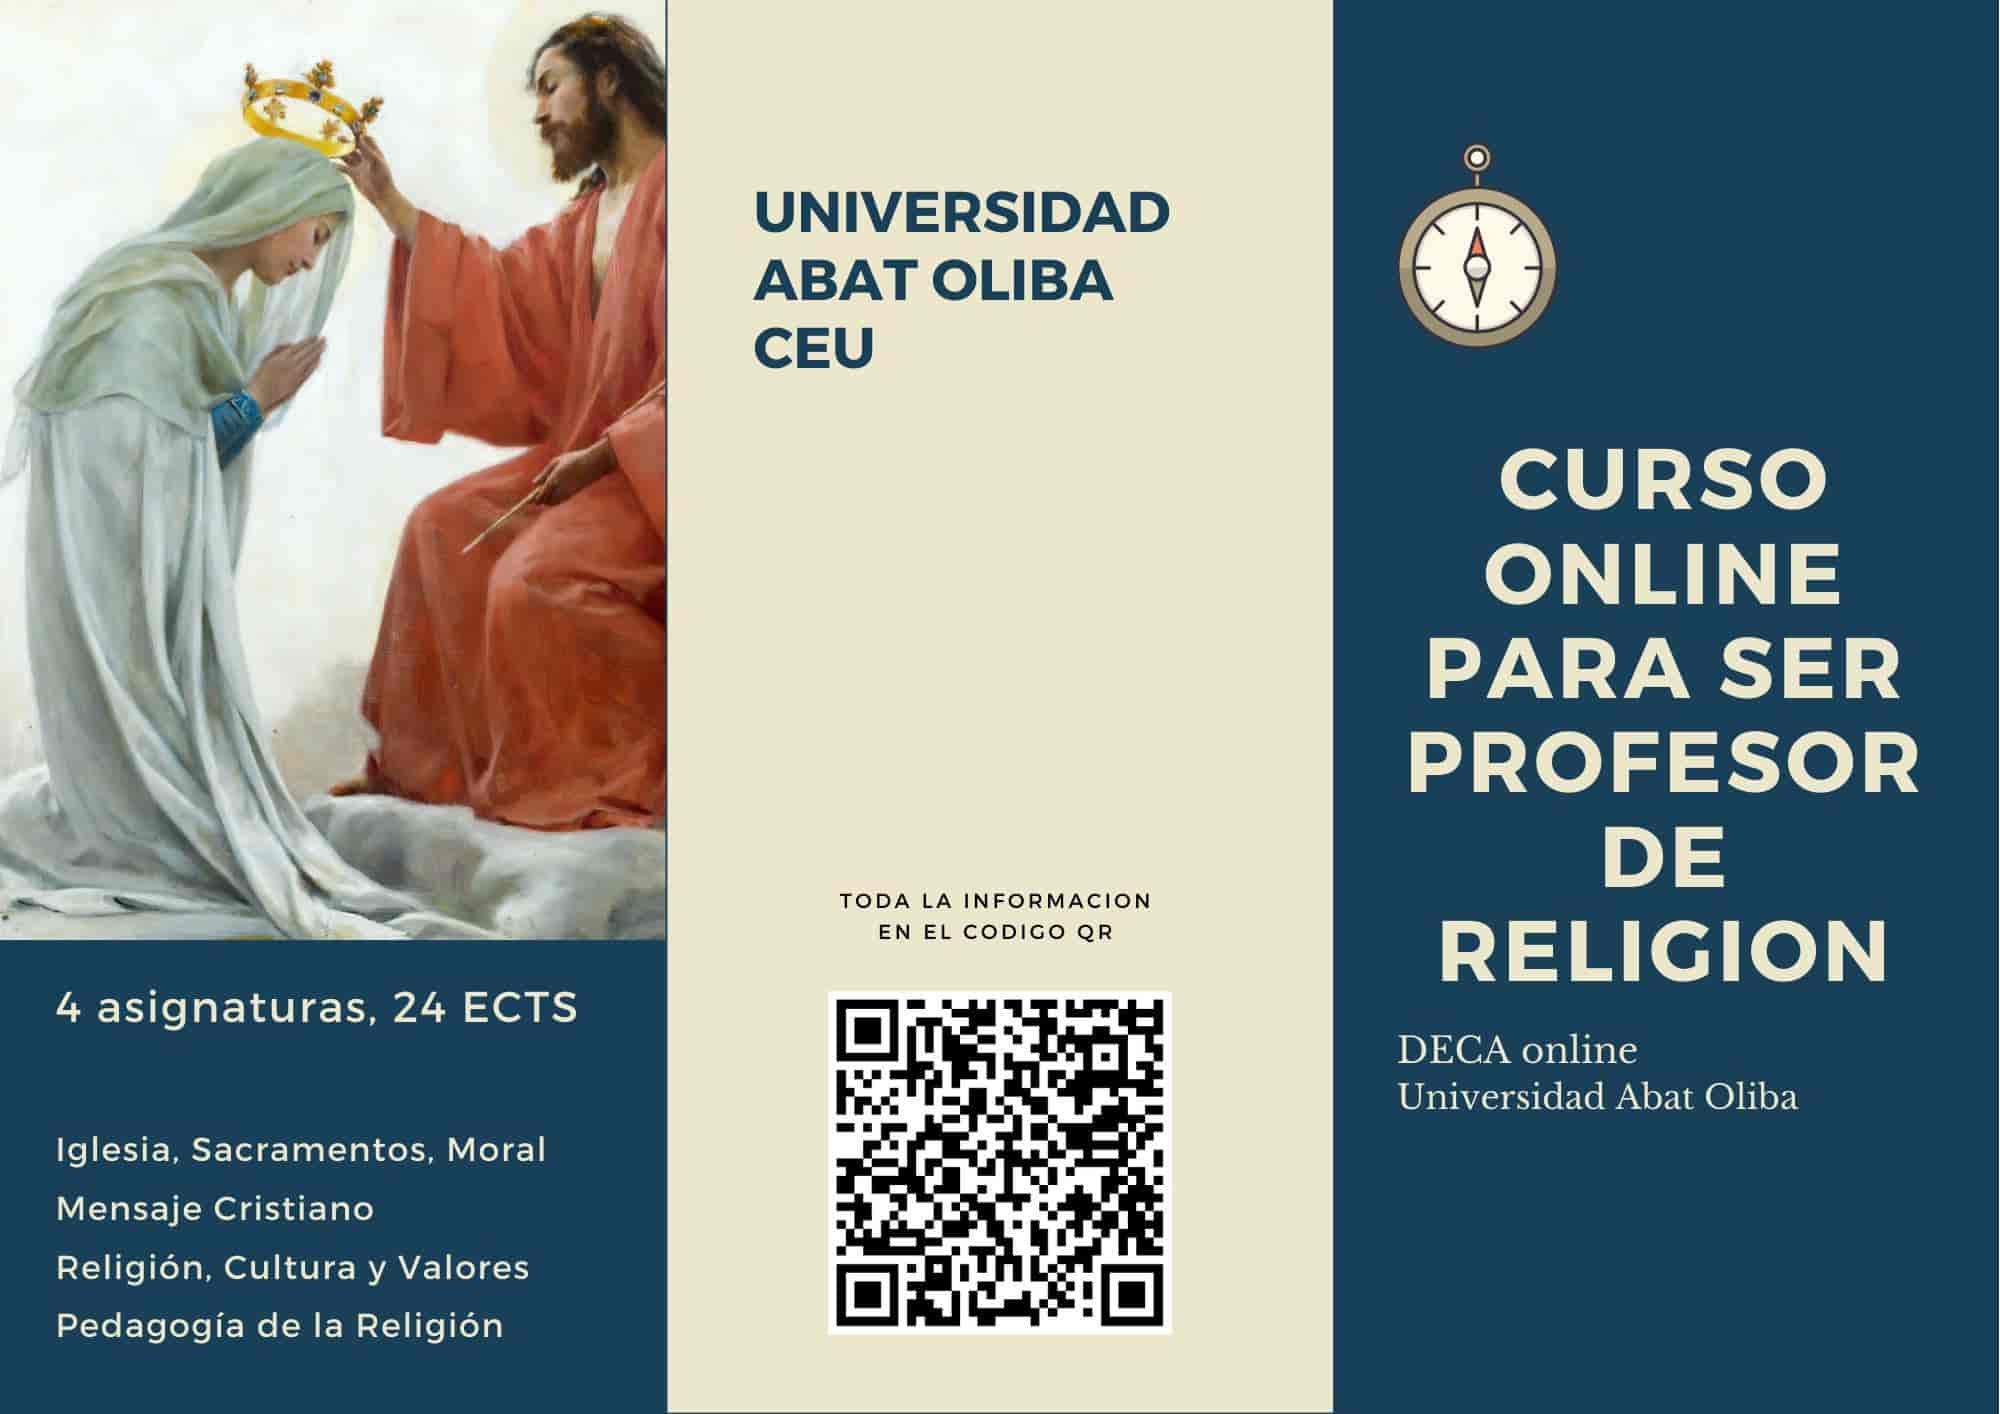 Curso DECA online para ser profesor de religión - créditos de Universidad Abat Oliba